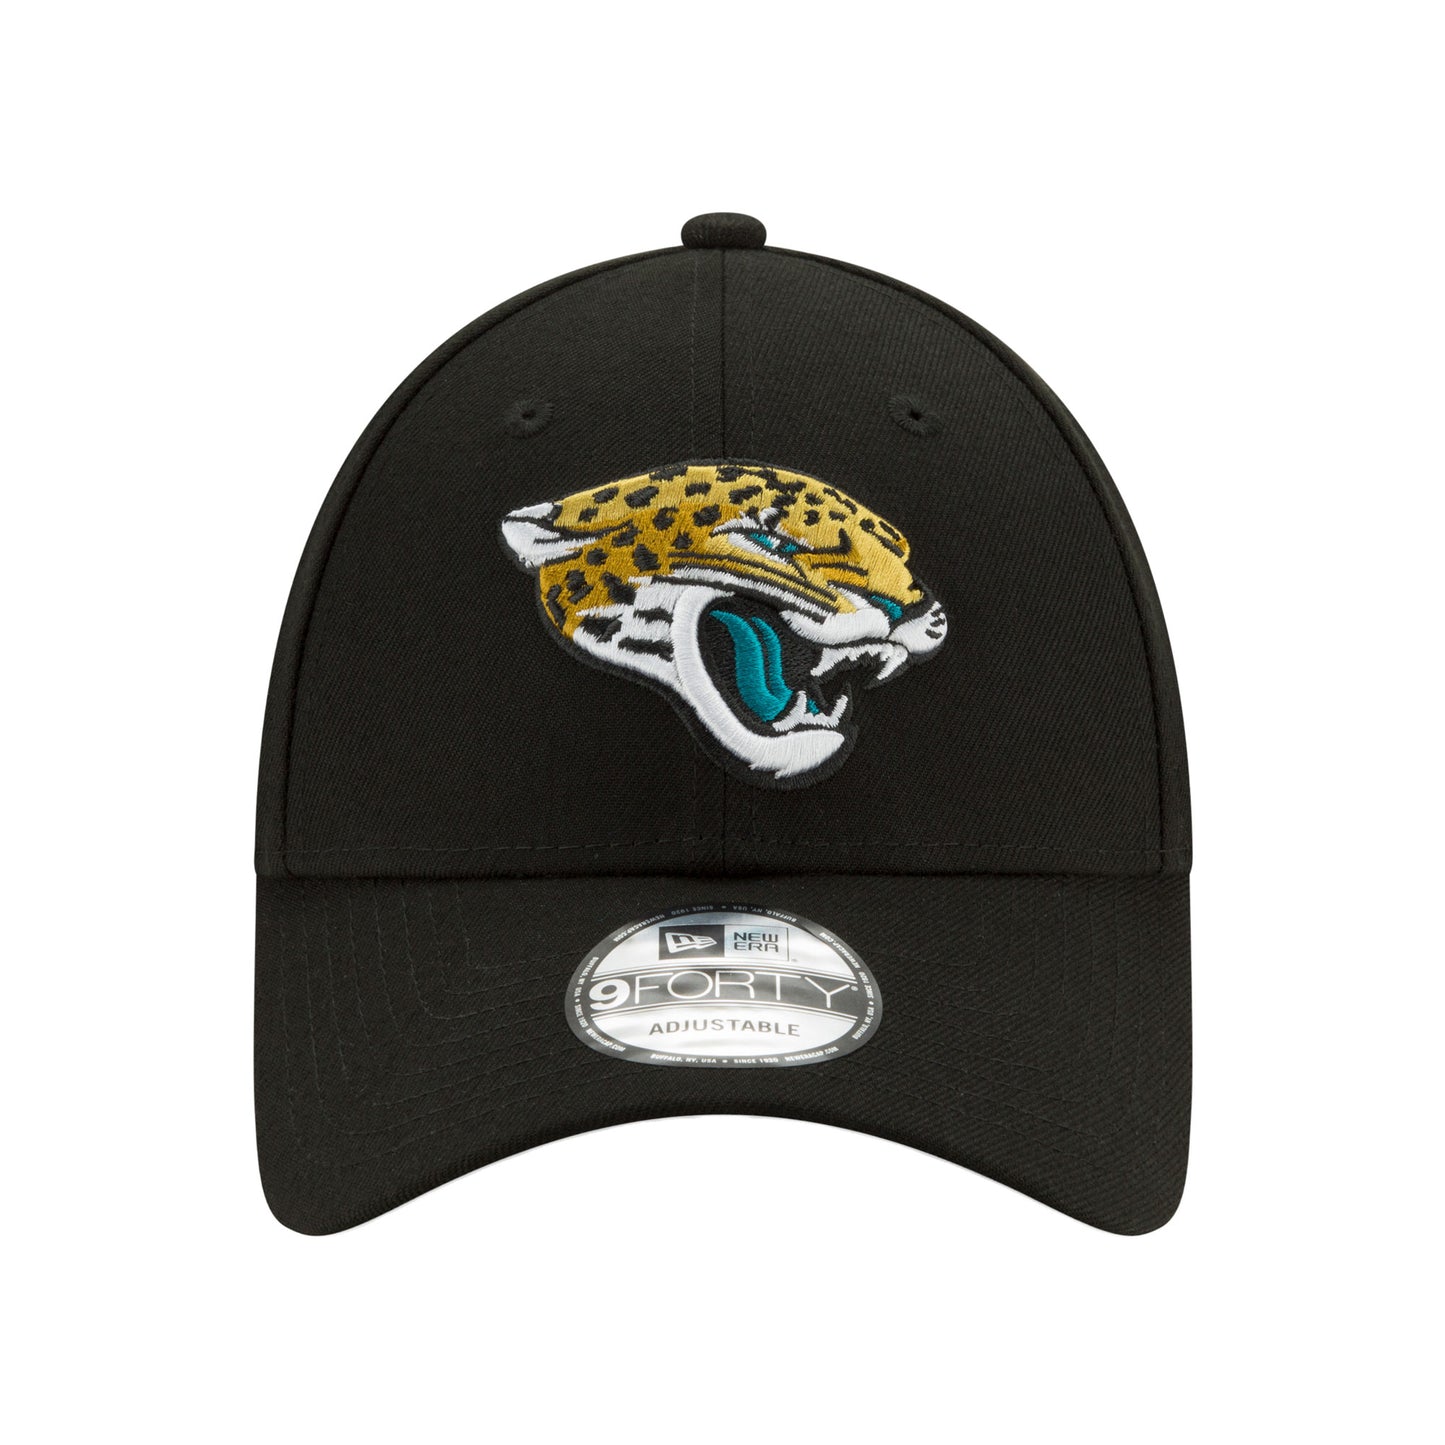 THE LEAGUE Jacksonville Jaguars 9FORTY New Era Cap